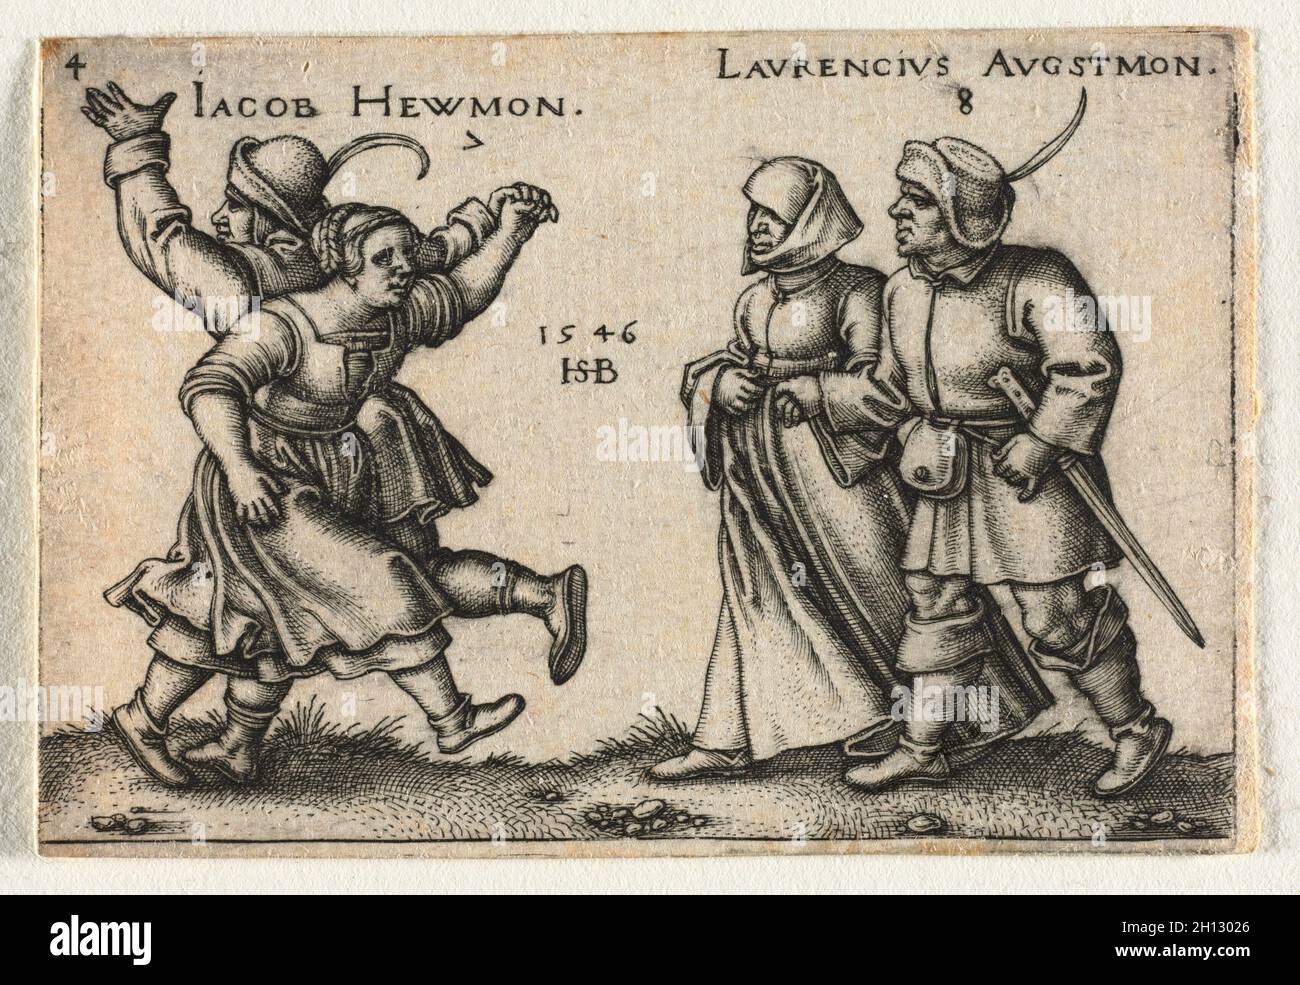 Die Bauernhochzeit oder die zwölf Monate: 7 Jacob Hewmon 8-Laurencius Augstmon, 1546. Hans Sebald Beham (Deutsch, 1500-1550). Gravur; Stockfoto